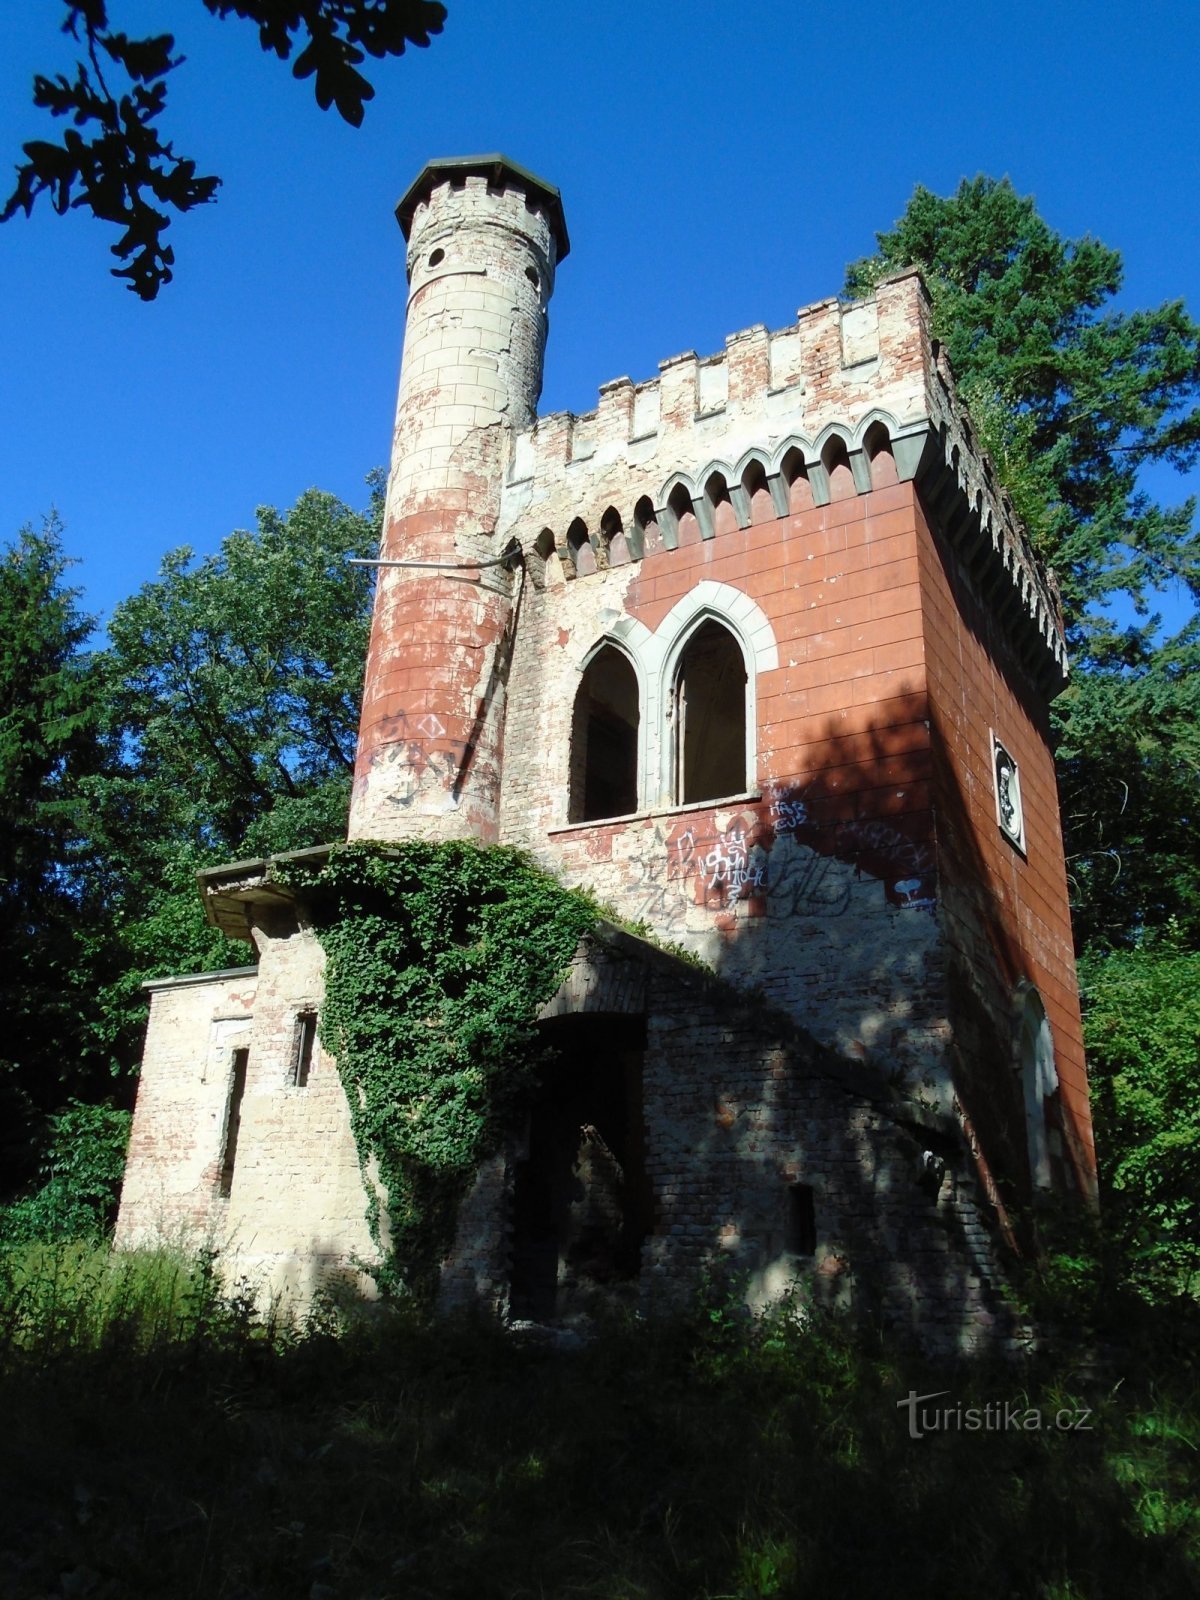 Castelul de vară Weinrich (Rohoznice)